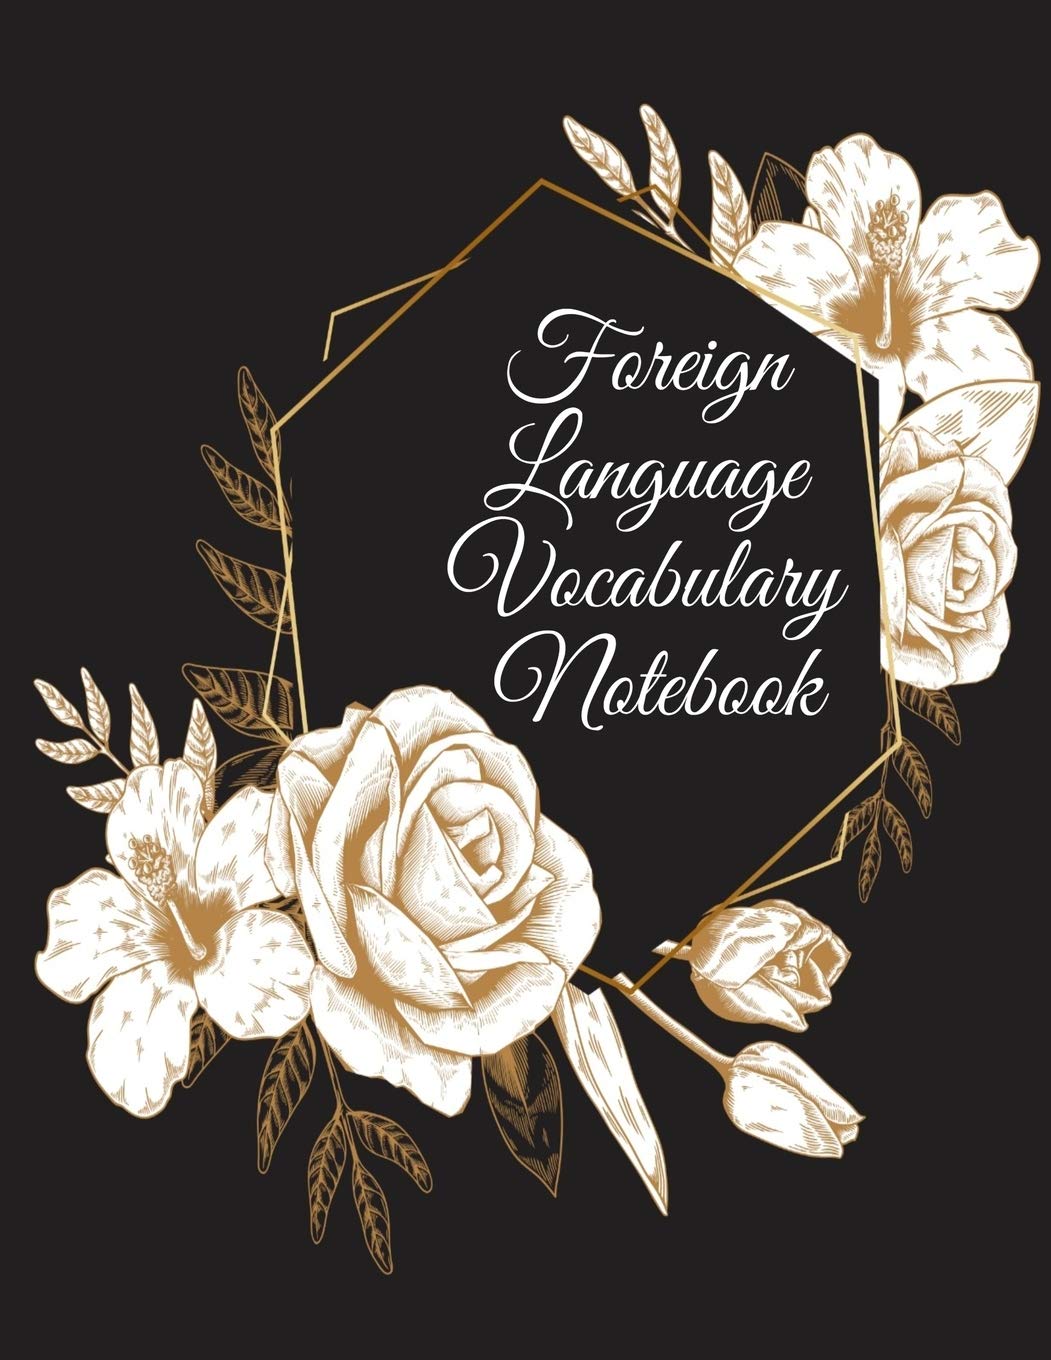 Foreign Language Vocabulary Notebook - SureShot Books Publishing LLC